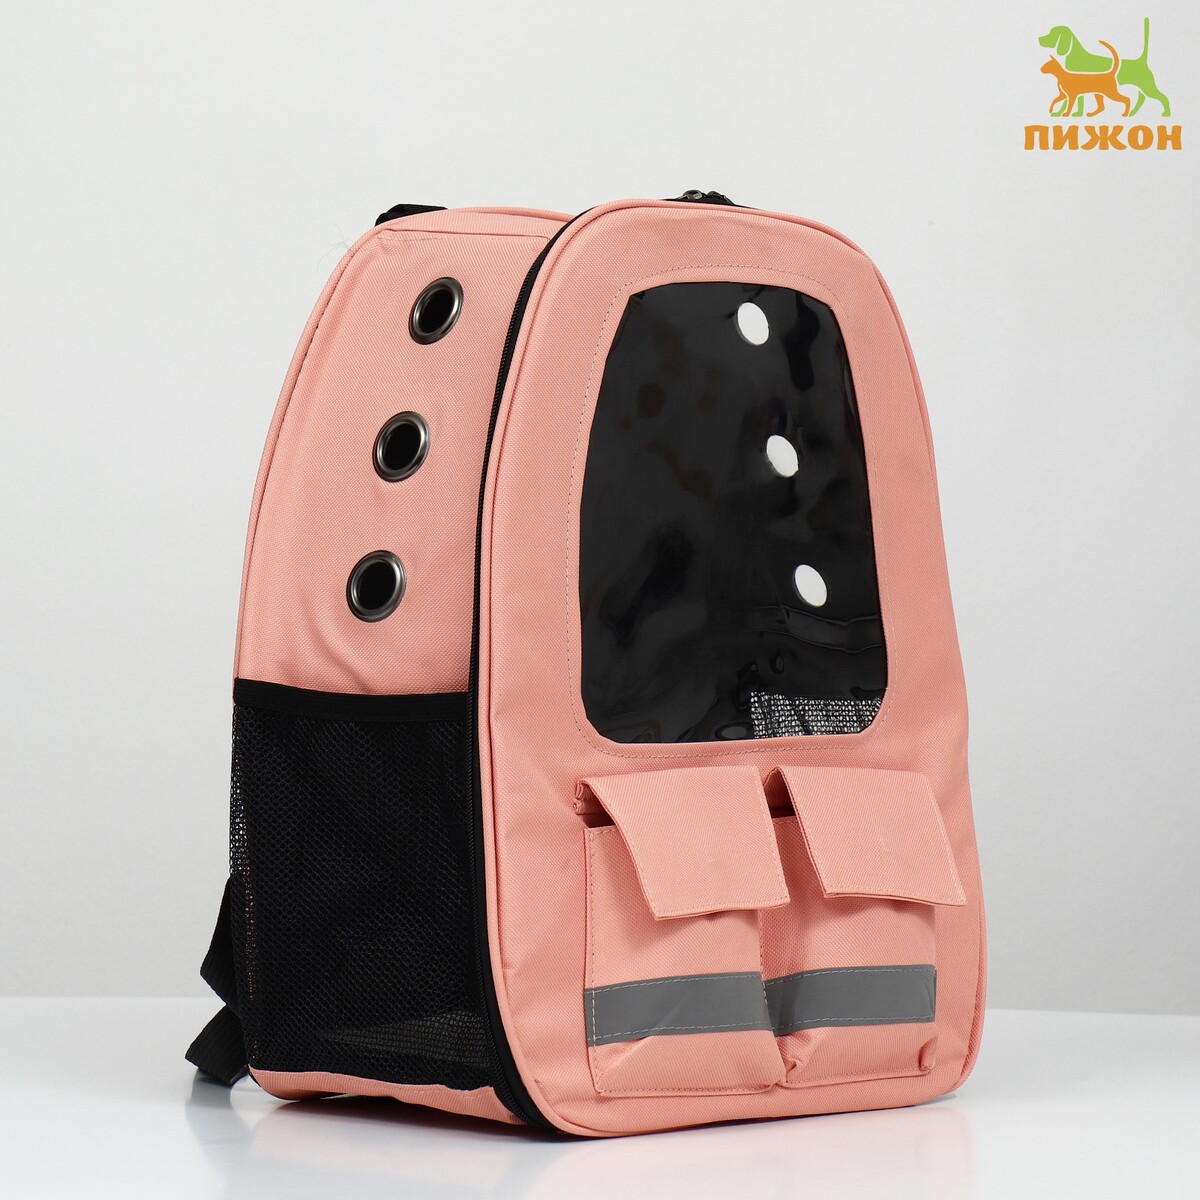 Рюкзак для переноски животных с окном для обзора, розовый пакет подарочный с окном 20 х 15 х 10 см розовый